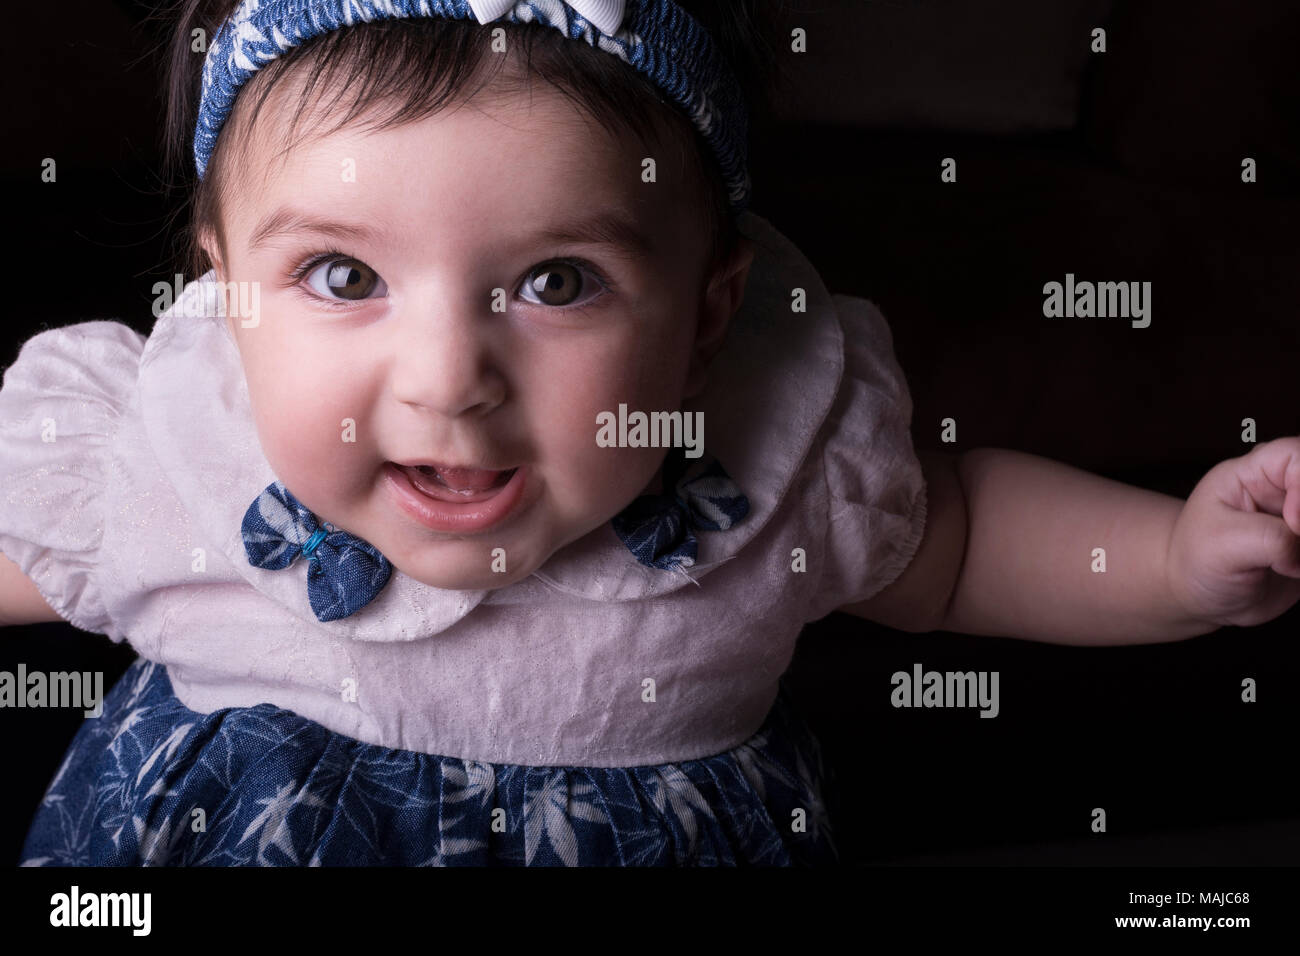 Felice 5 mesi immagini e fotografie stock ad alta risoluzione - Alamy